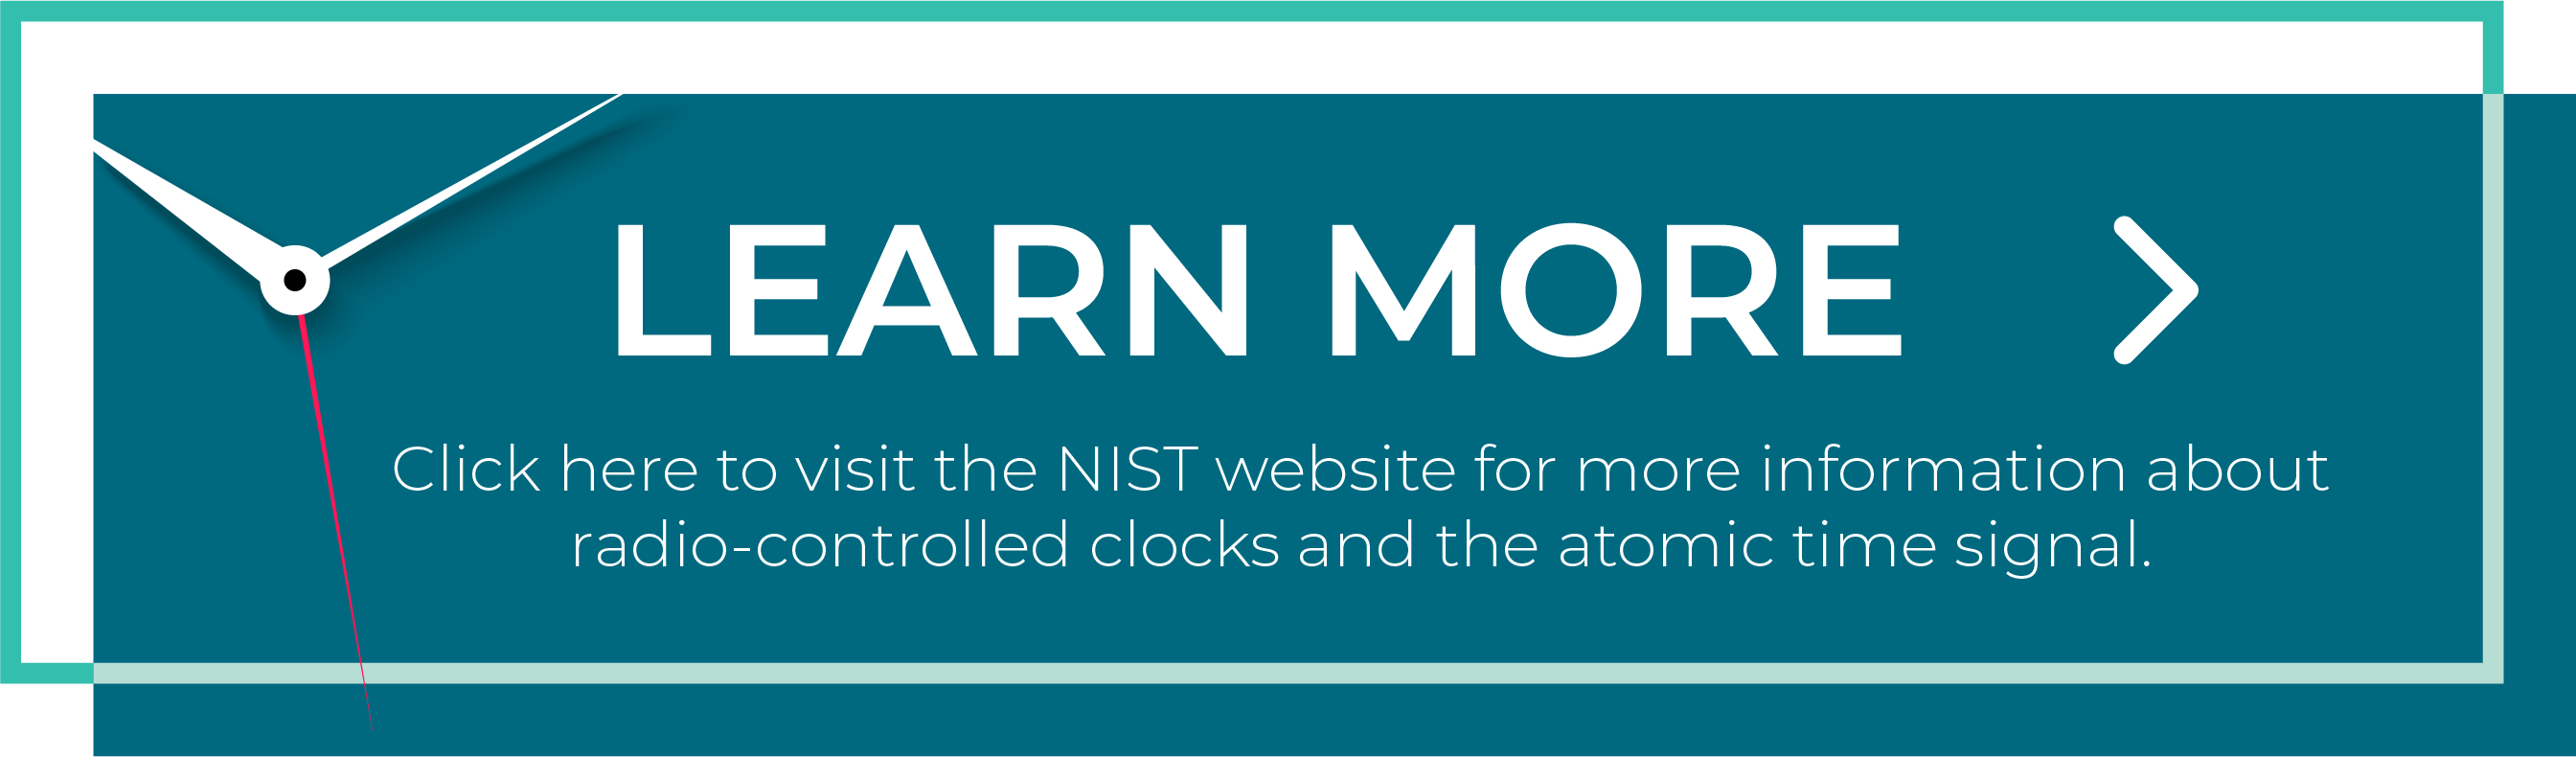 点击这里访问NIST网站获取更多关于无线电控制时钟和原子时信号的信息.